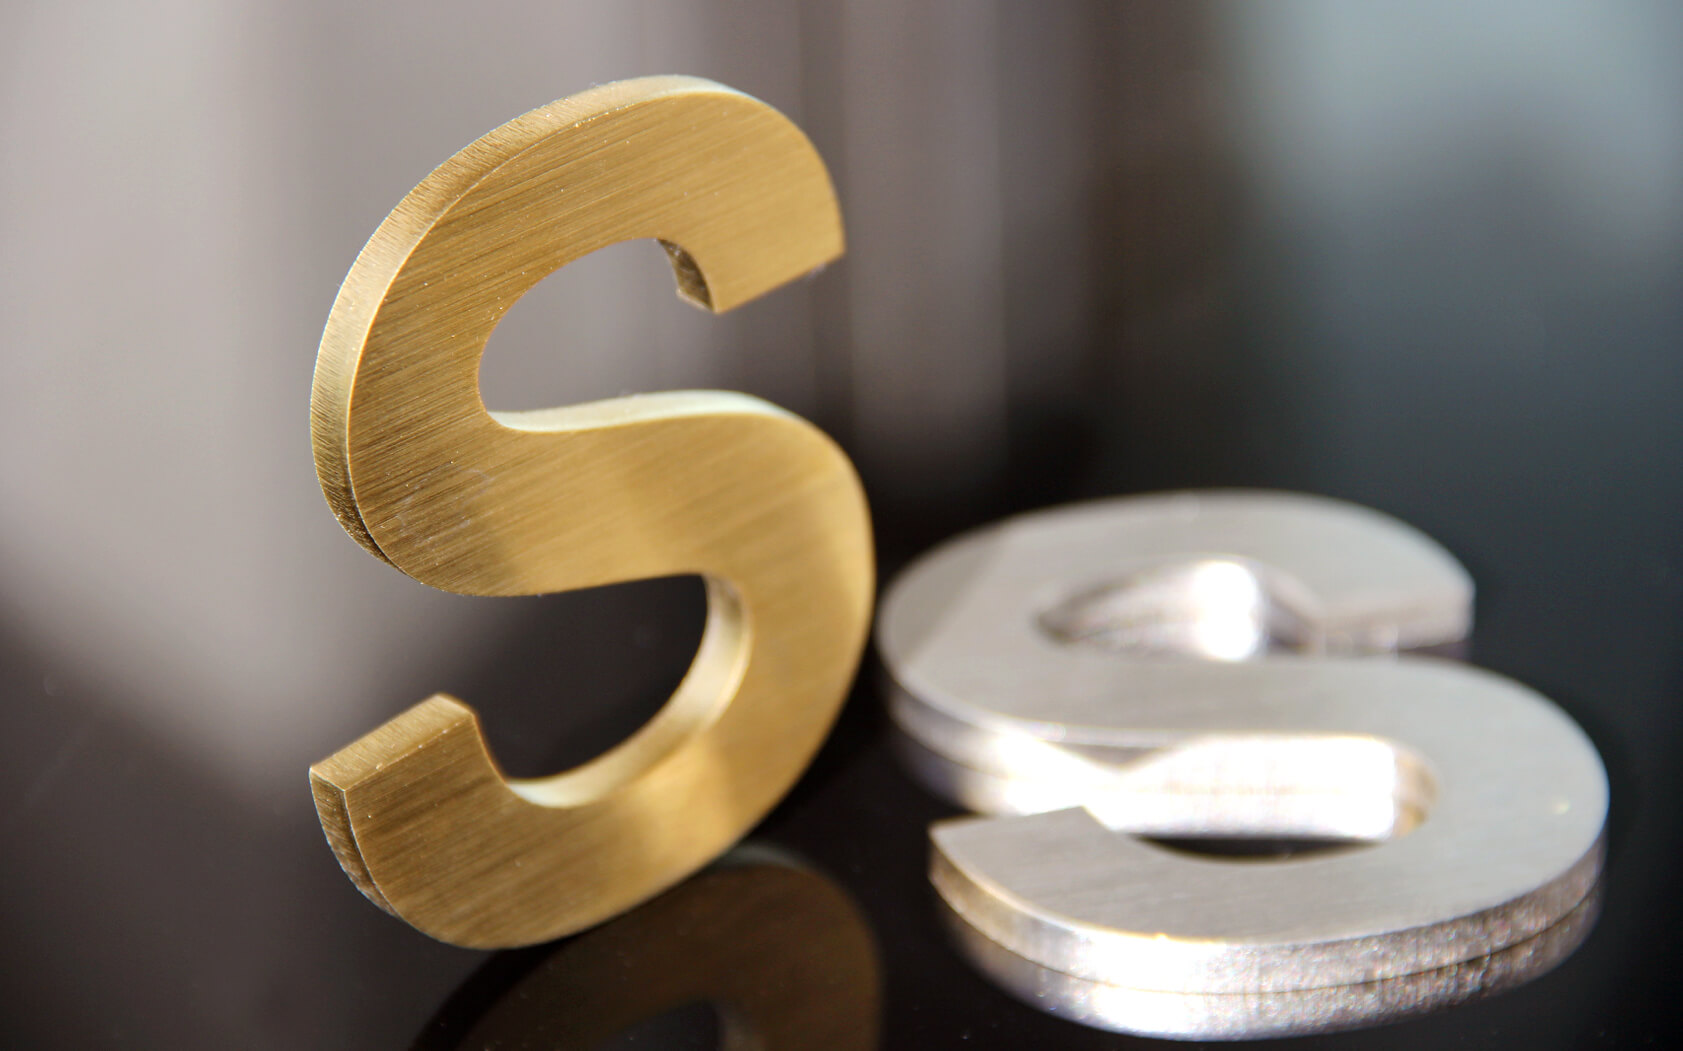 De letters S - Gouden en zilveren letter S, gemaakt van metaal